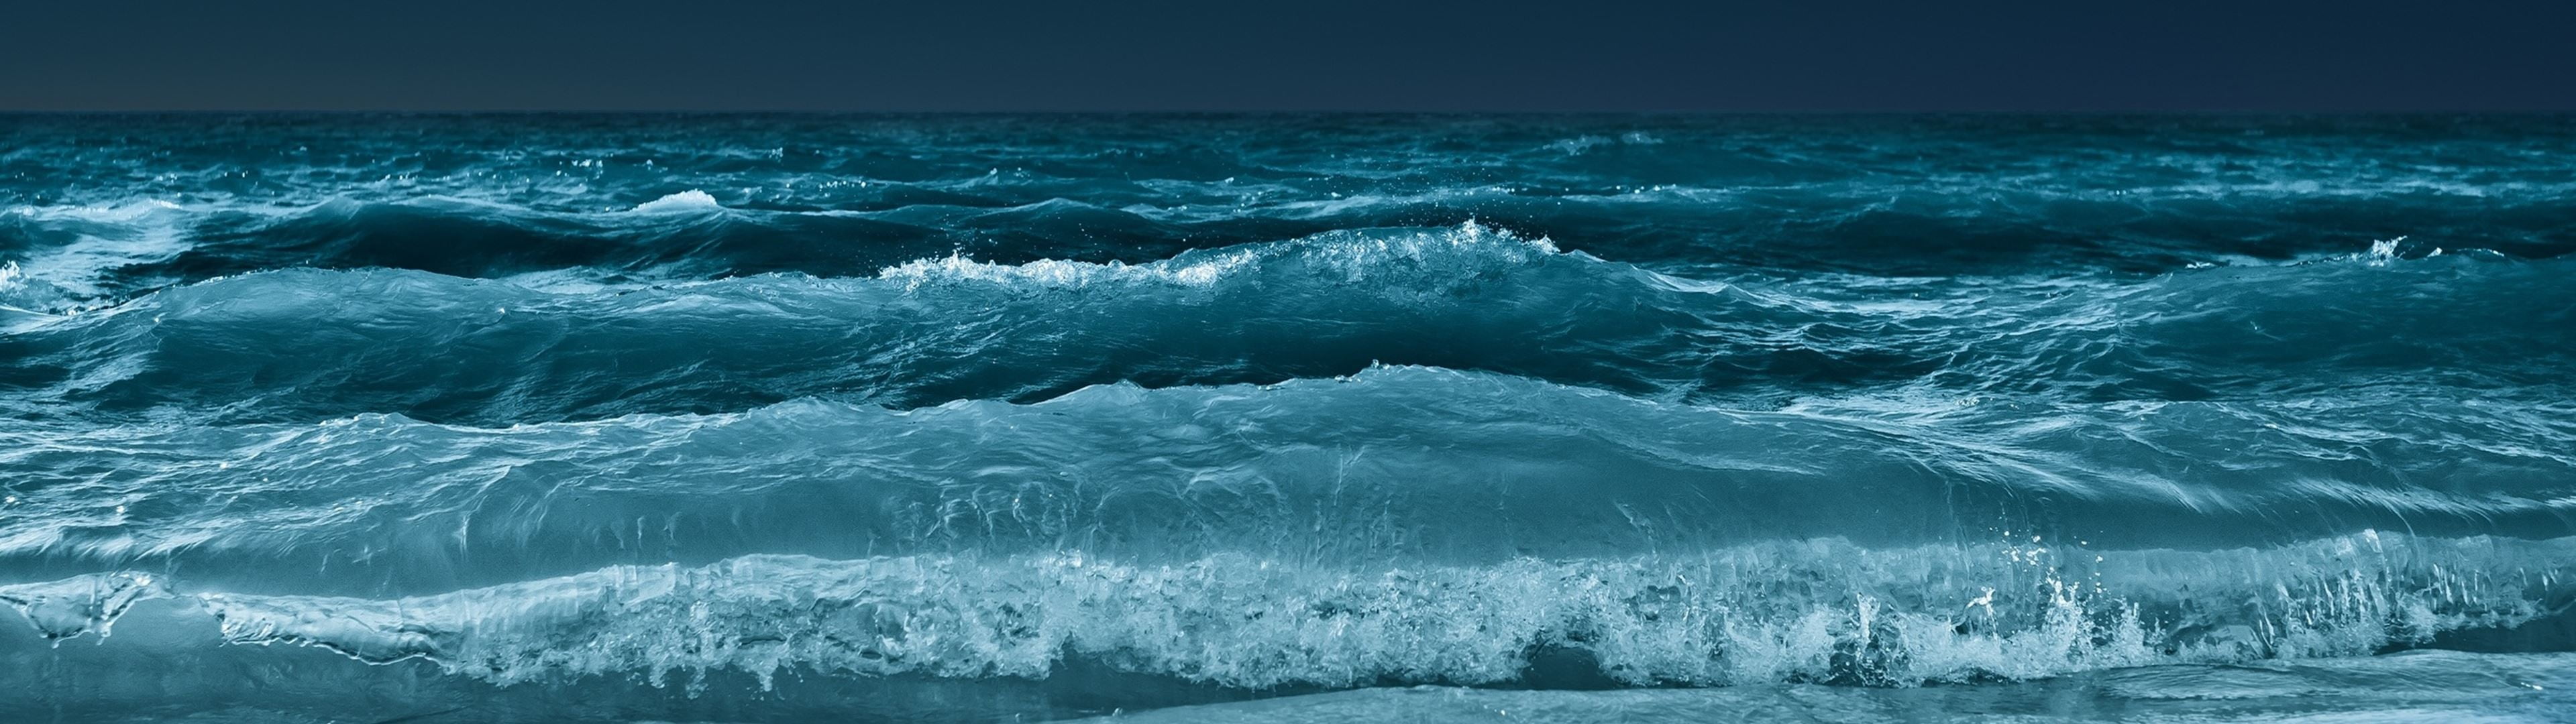 body of water, multiple display, water, waves